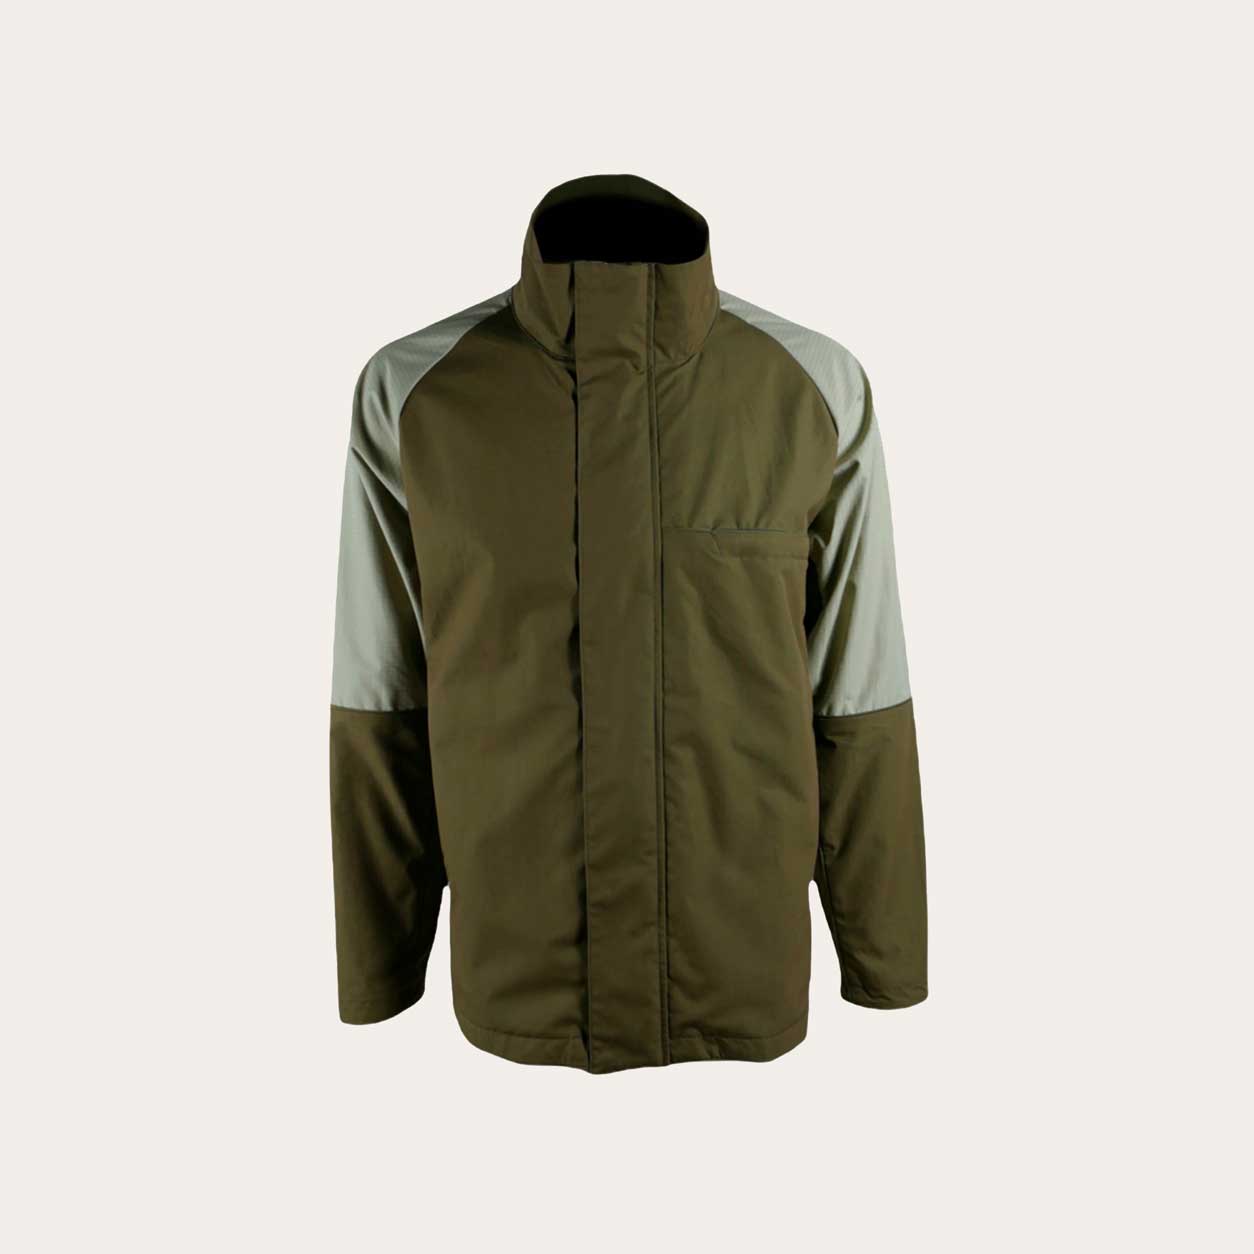 Baseline Shell Jacket Full Zip – Men’s